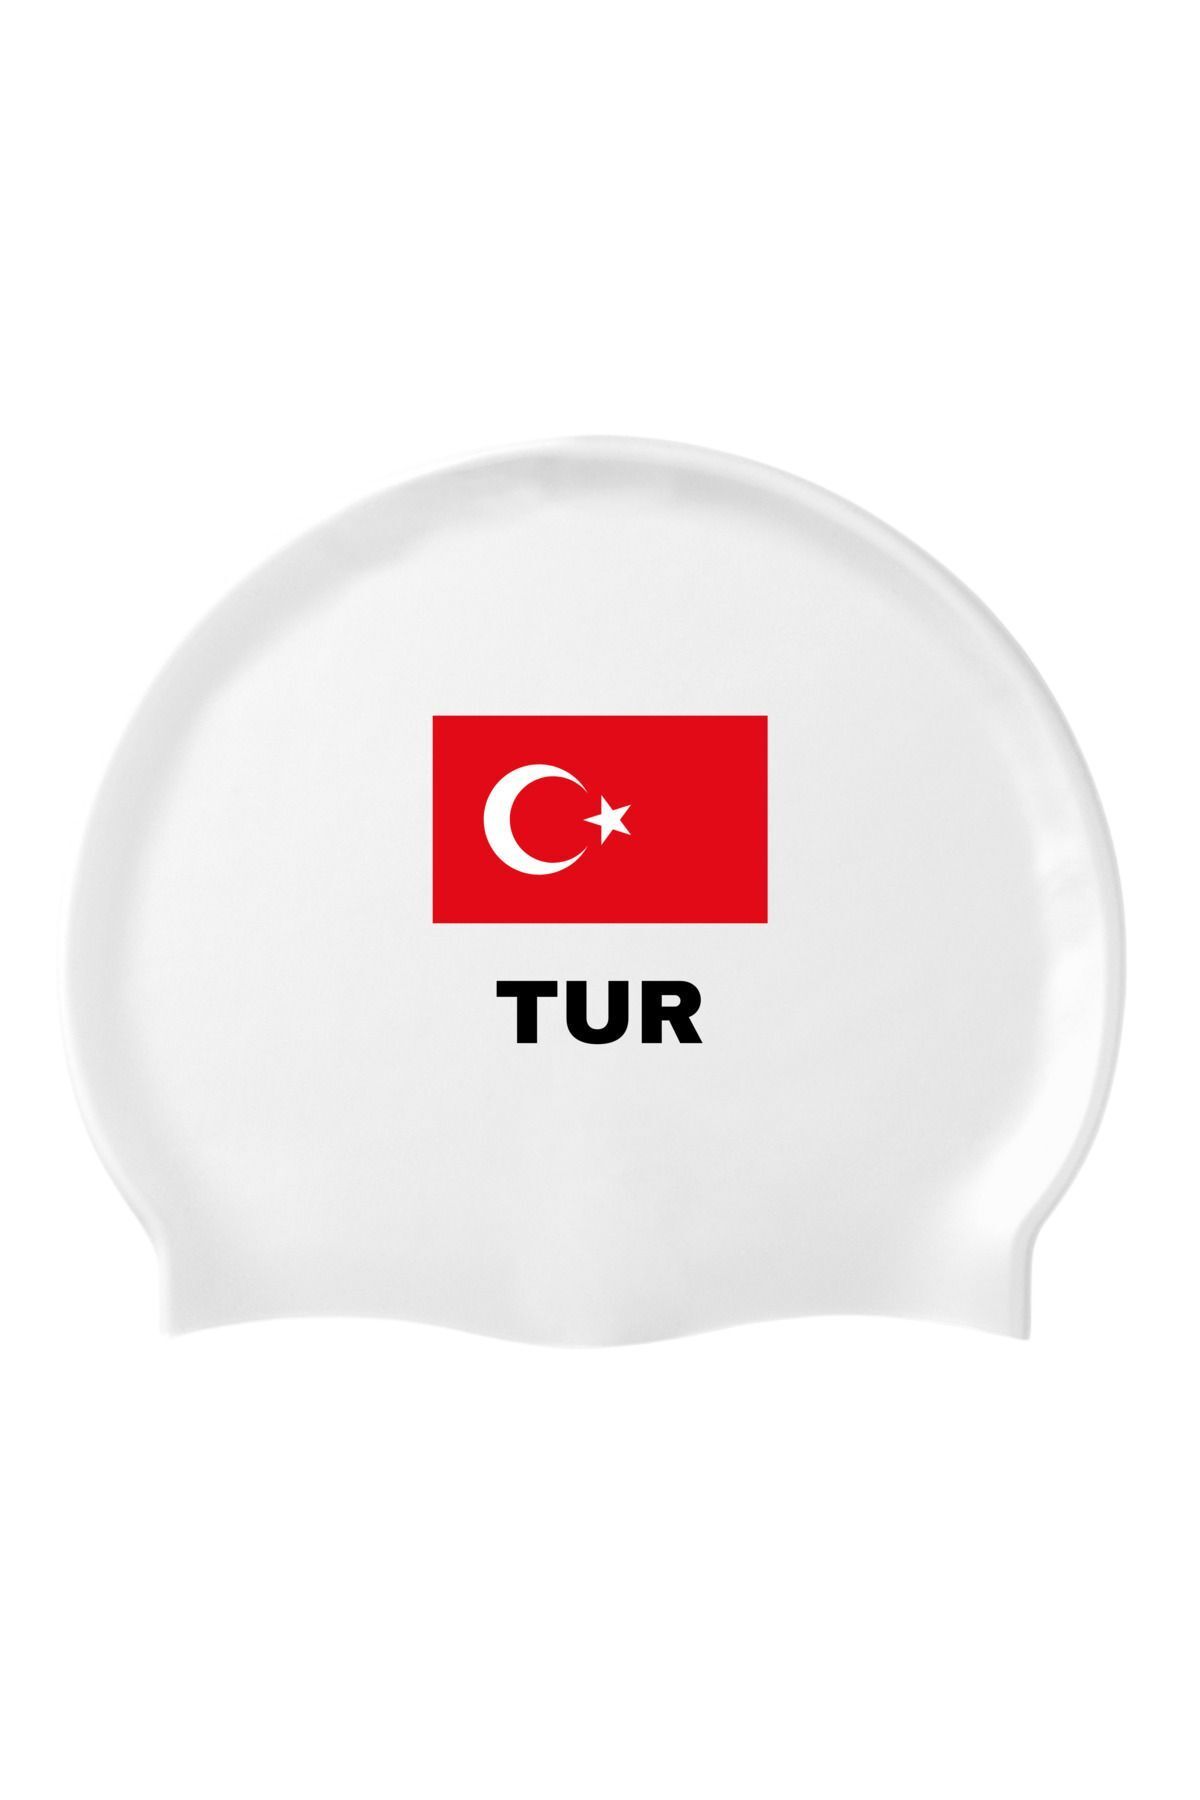 İKAVİ Türk Bayrağı TUR Baskılı Silikon Deniz ve Havuz Bonesi